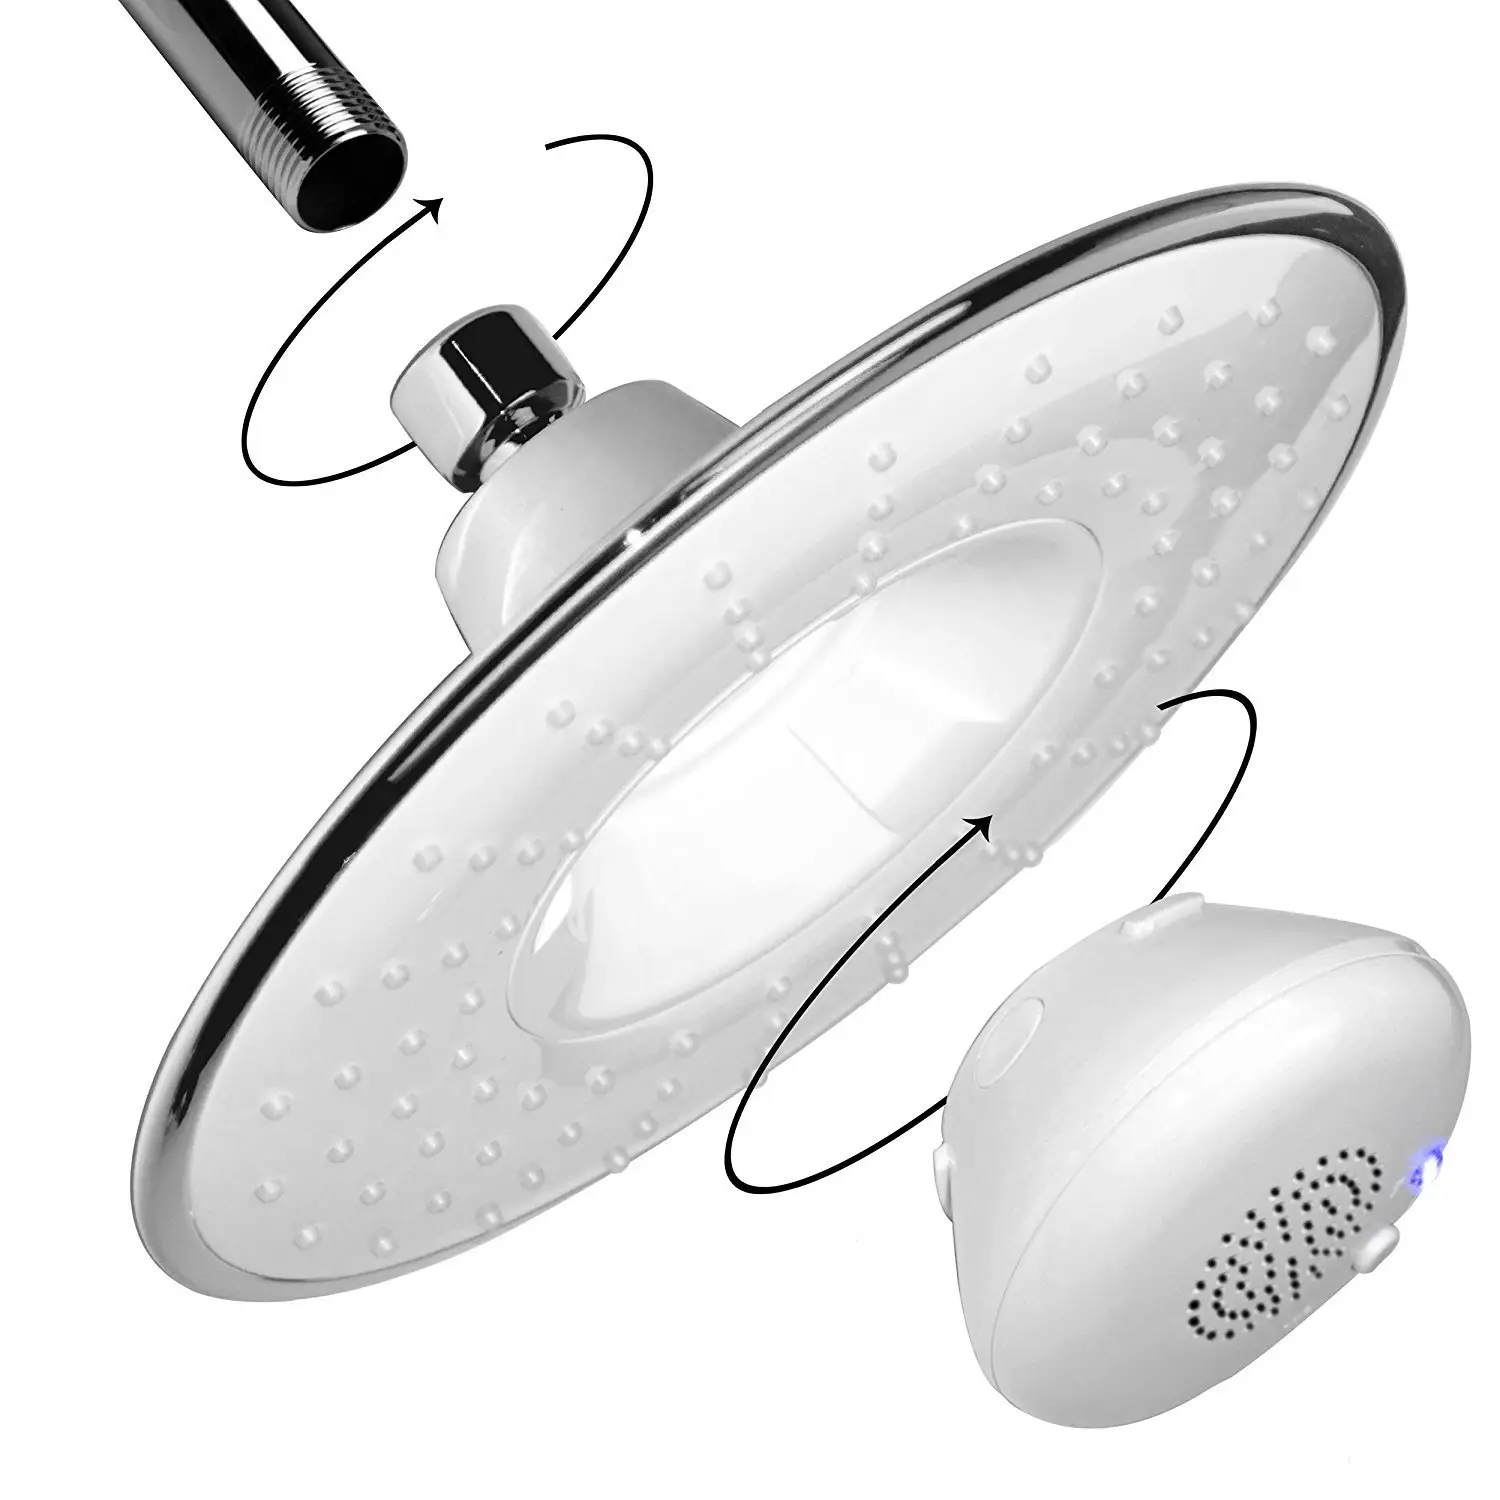 CUPC Large 8 Zoll Dusch kopf Regen dusch kopf, Musik dusch kopf mit wasserdichtem Lautsprecher für Musik oder Telefon